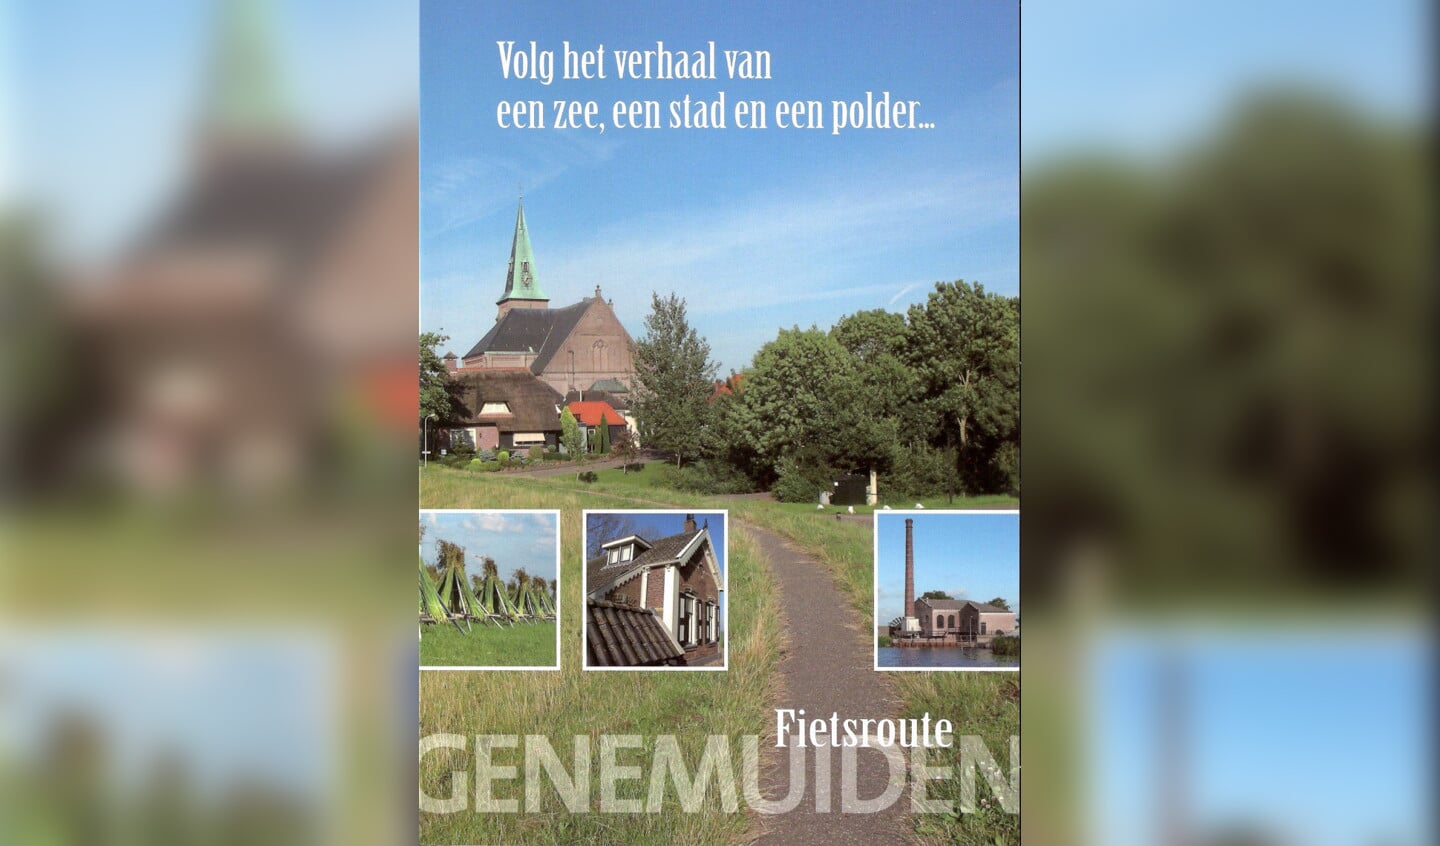 'Fietsroute Genemuiden' na jaren weer beschikbaar